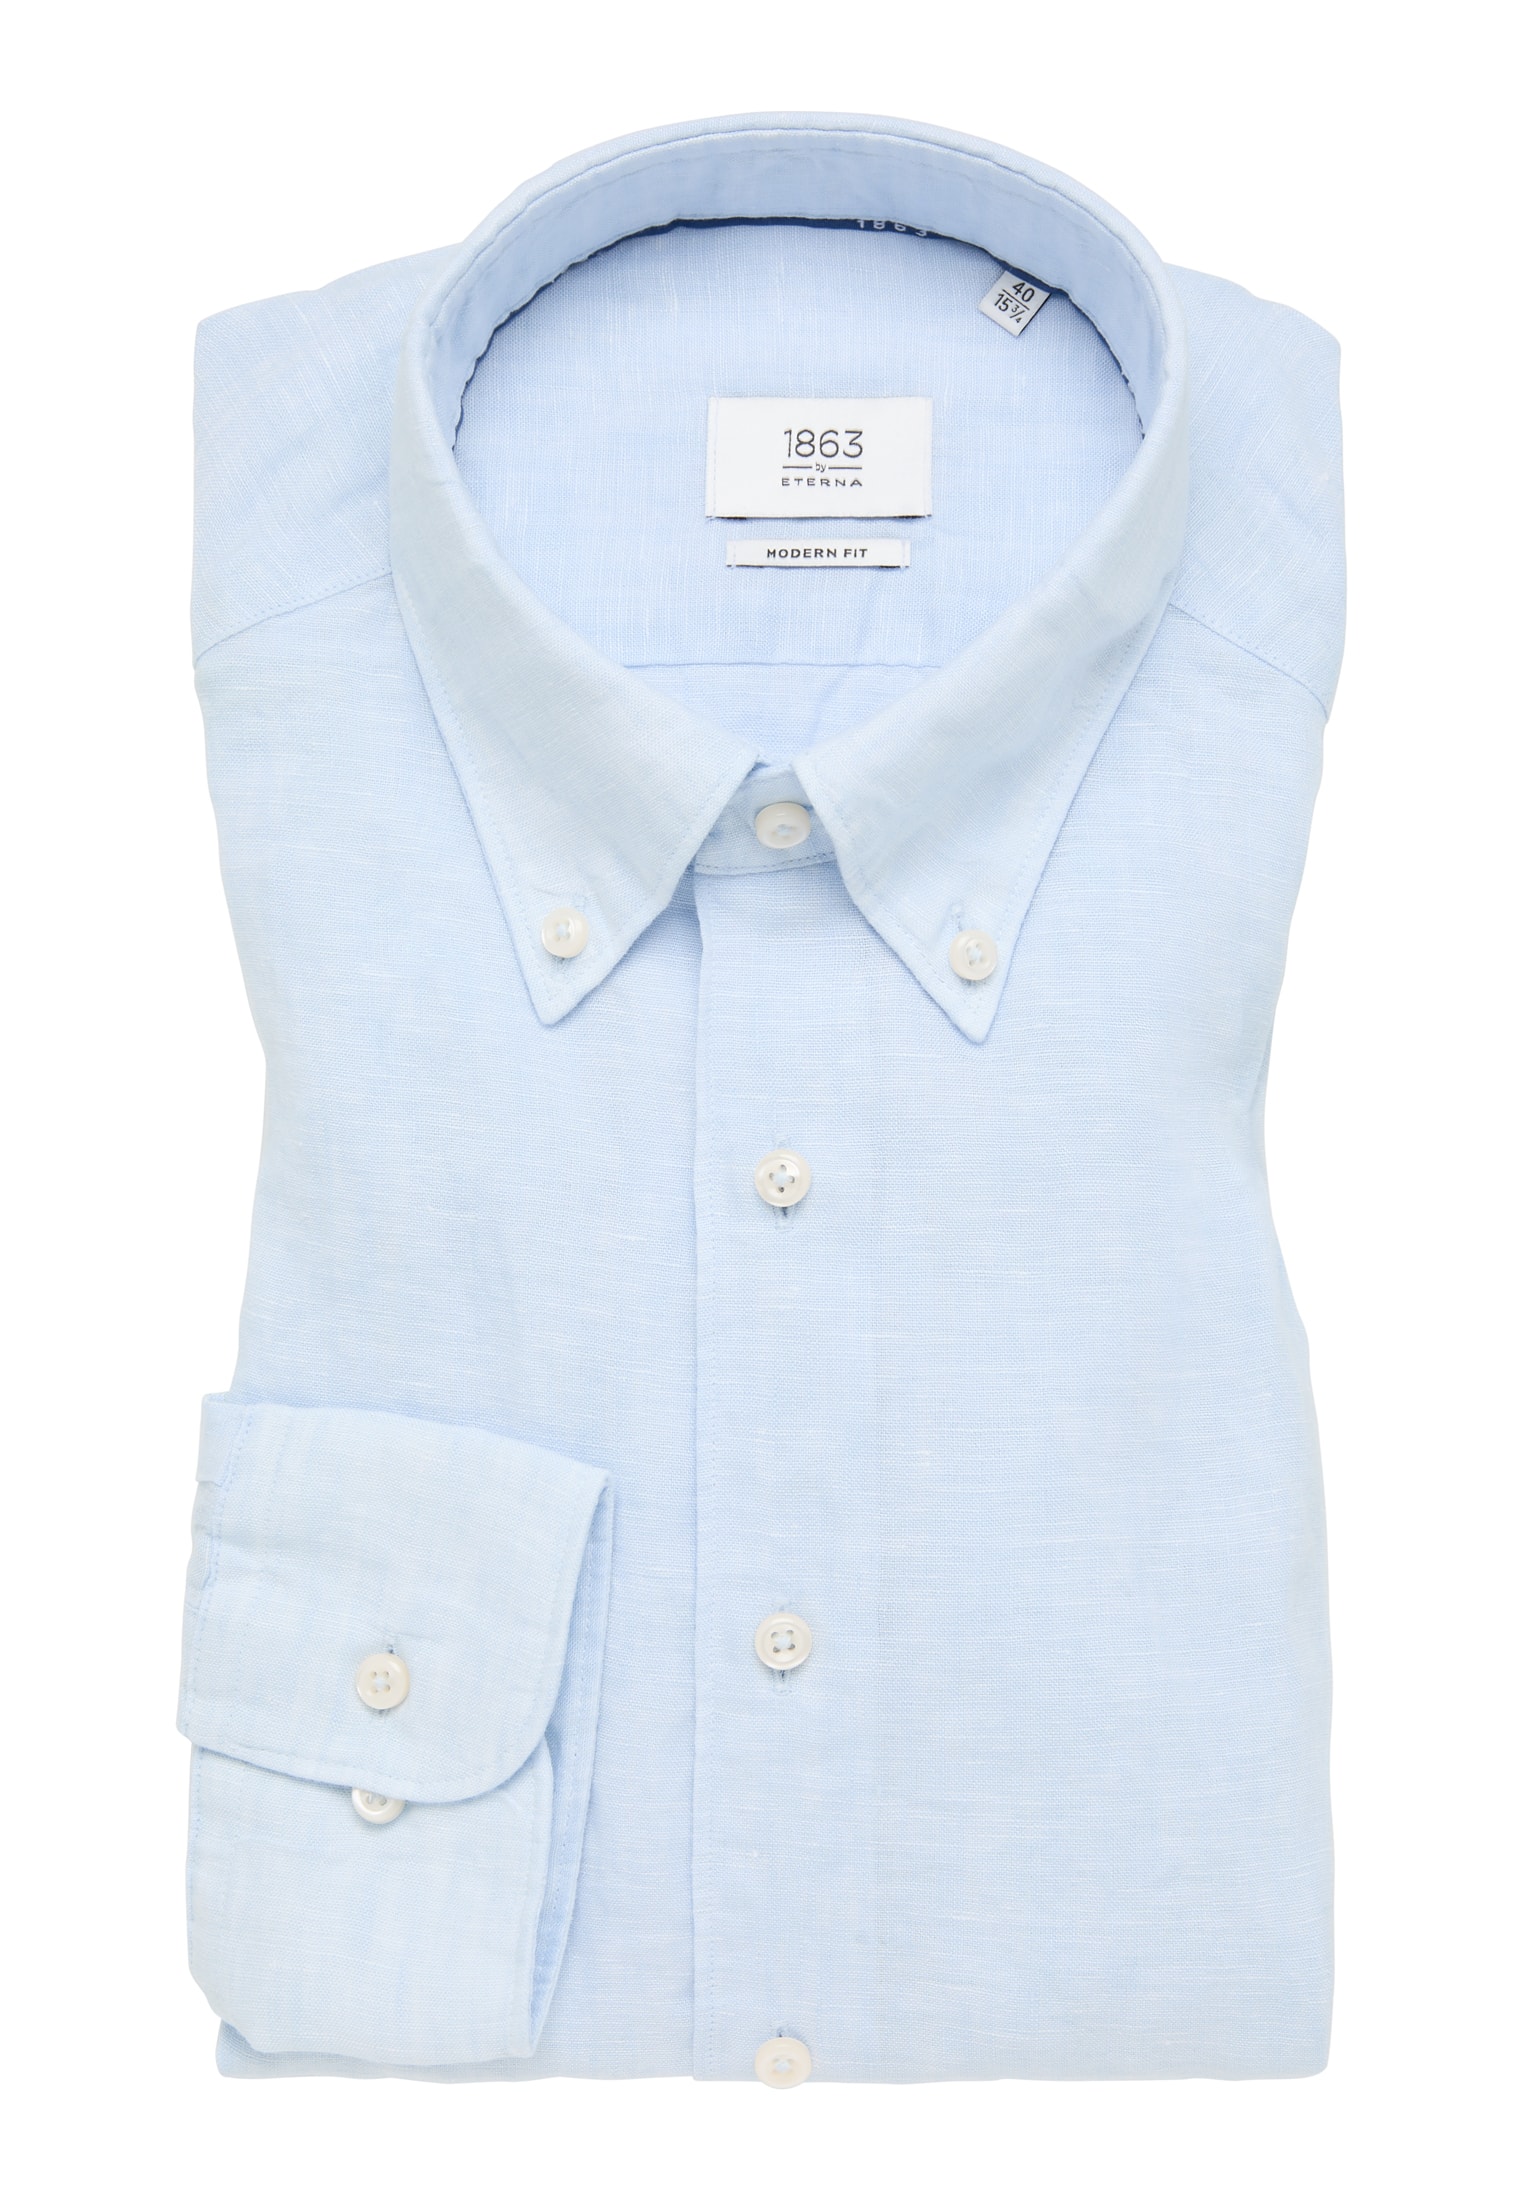 MODERN FIT Shirt blue blue in | 44 | long | plain | light light 1SH11902-01-11-44-1/1 sleeve